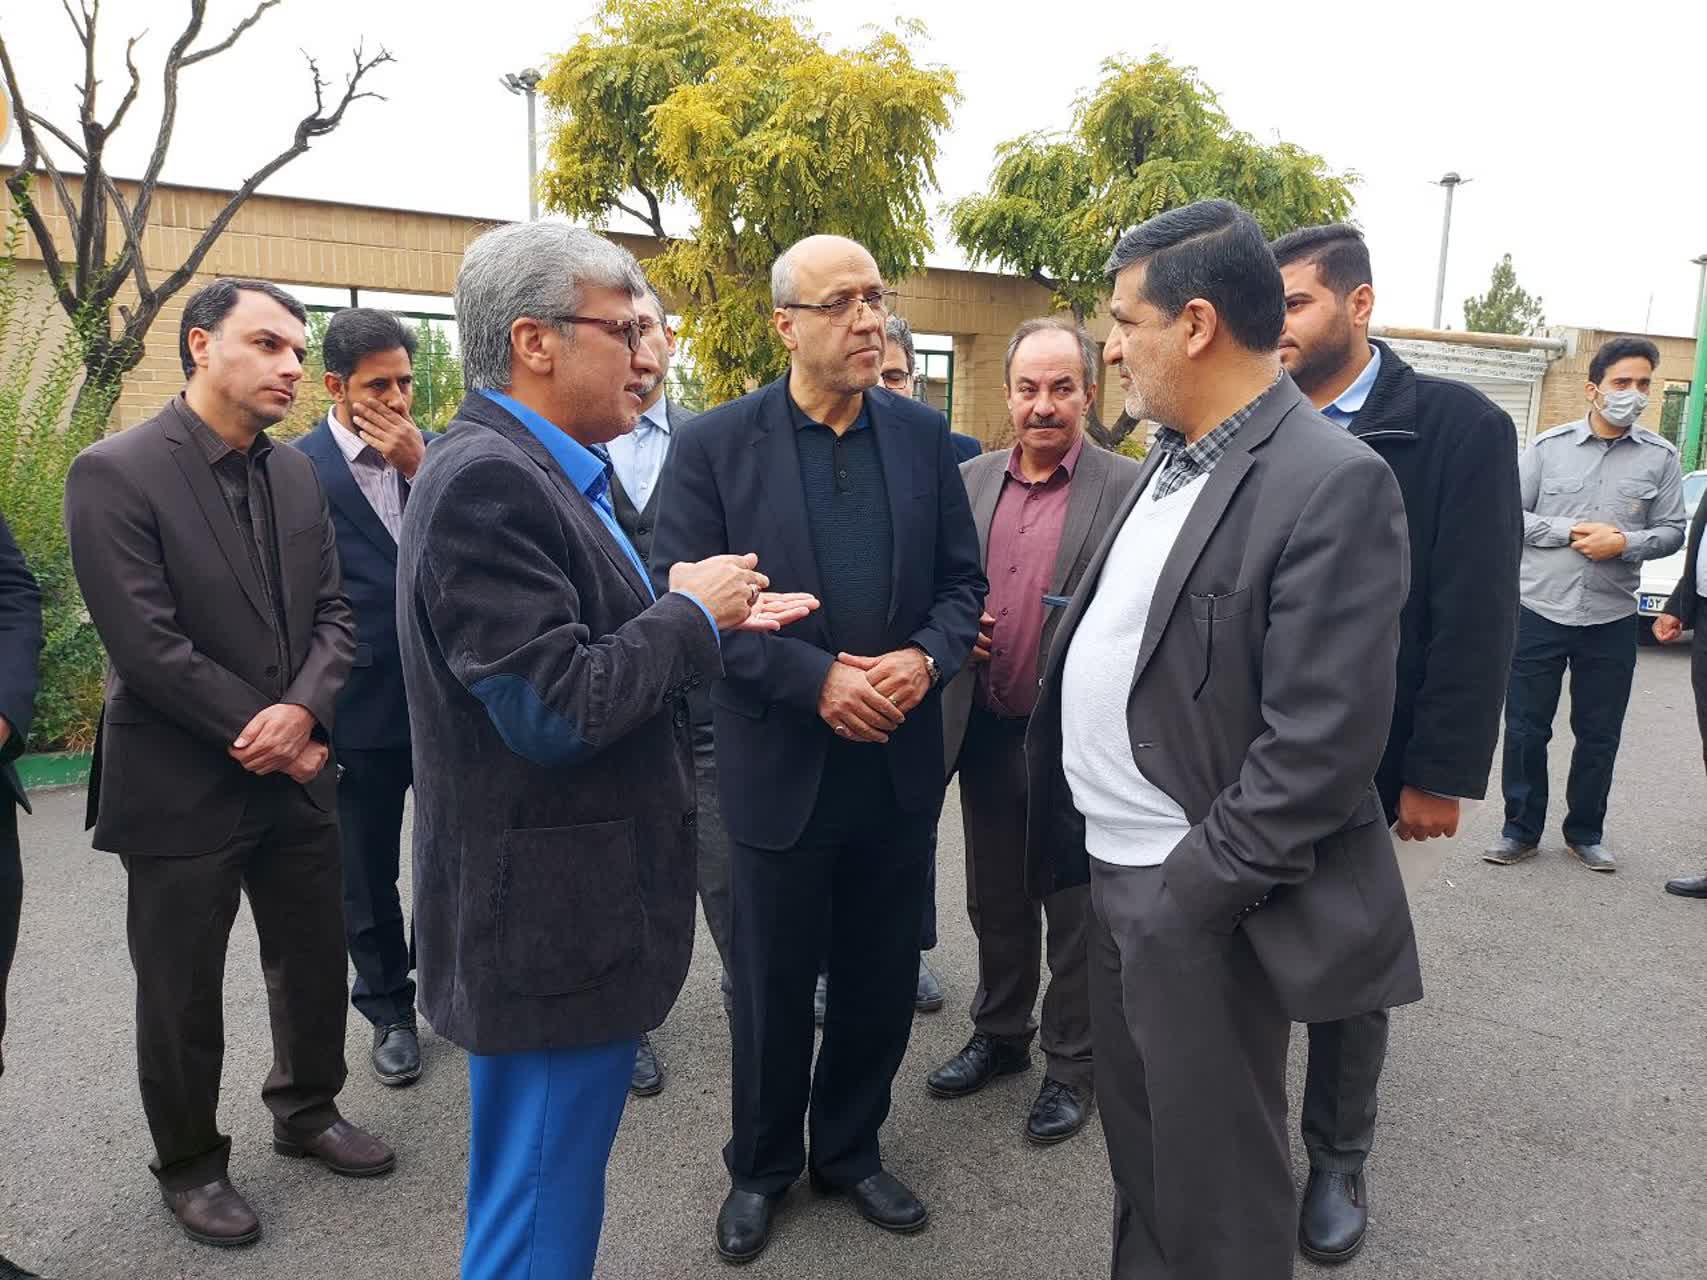 «تشکری هاشمی» در بازدید از ستاد مرکزی معاینه فنی خودروهای تهران مطرح کرد؛ ضرورت شناسایی و احصاء راهکارهای اندازه گیری و كنترل آلاینده ذرات معلق در خودروها